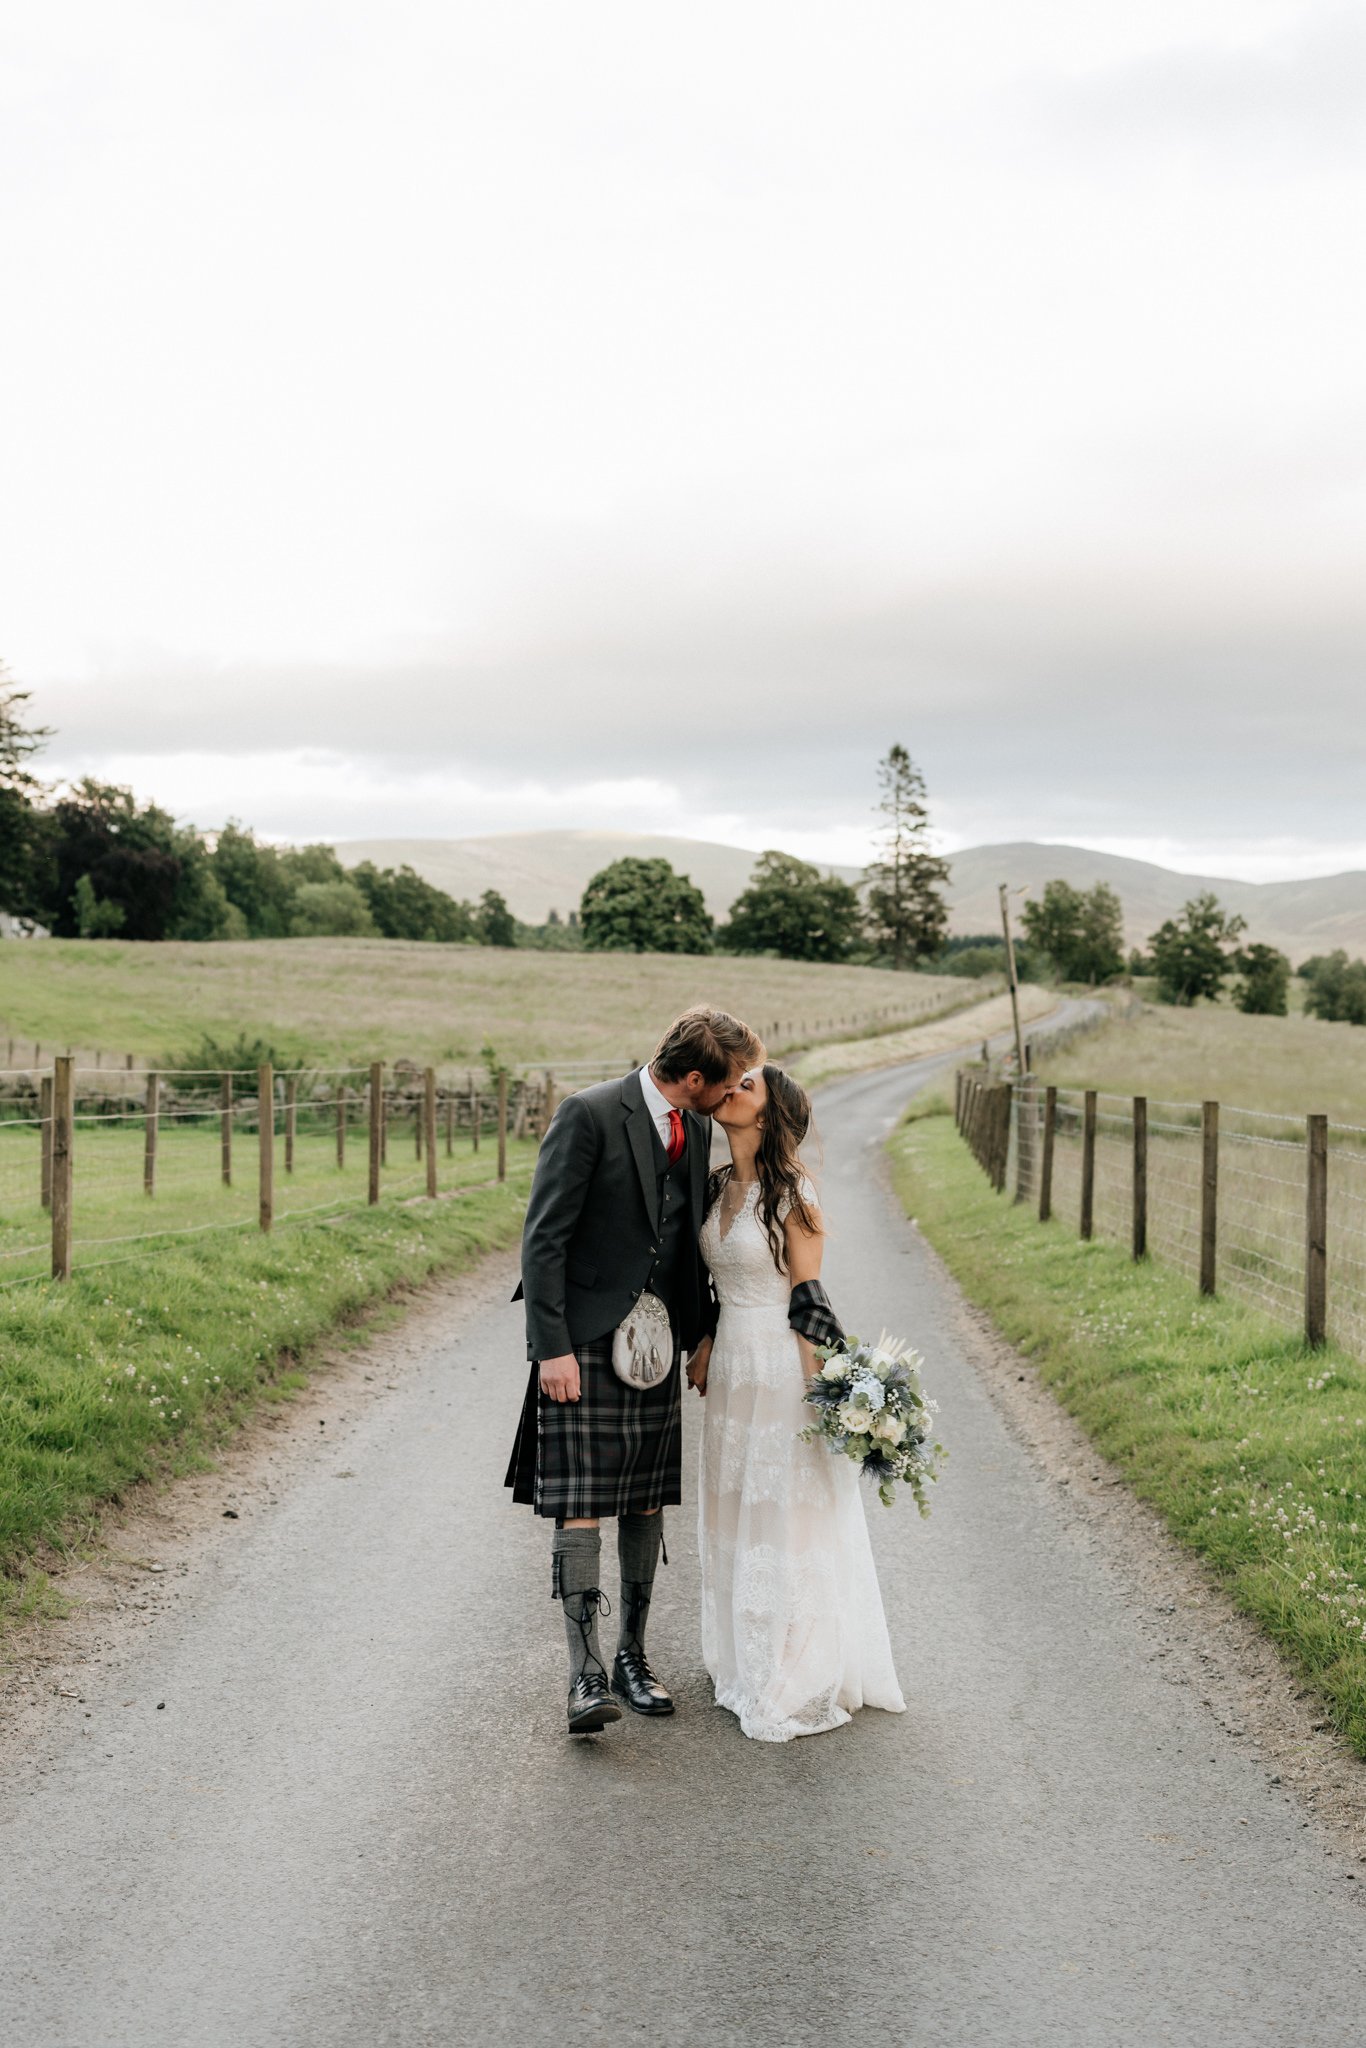 Glen Clova Hotel wedding photography | Aberdeenshire wedding photographer and videographer-57.jpg